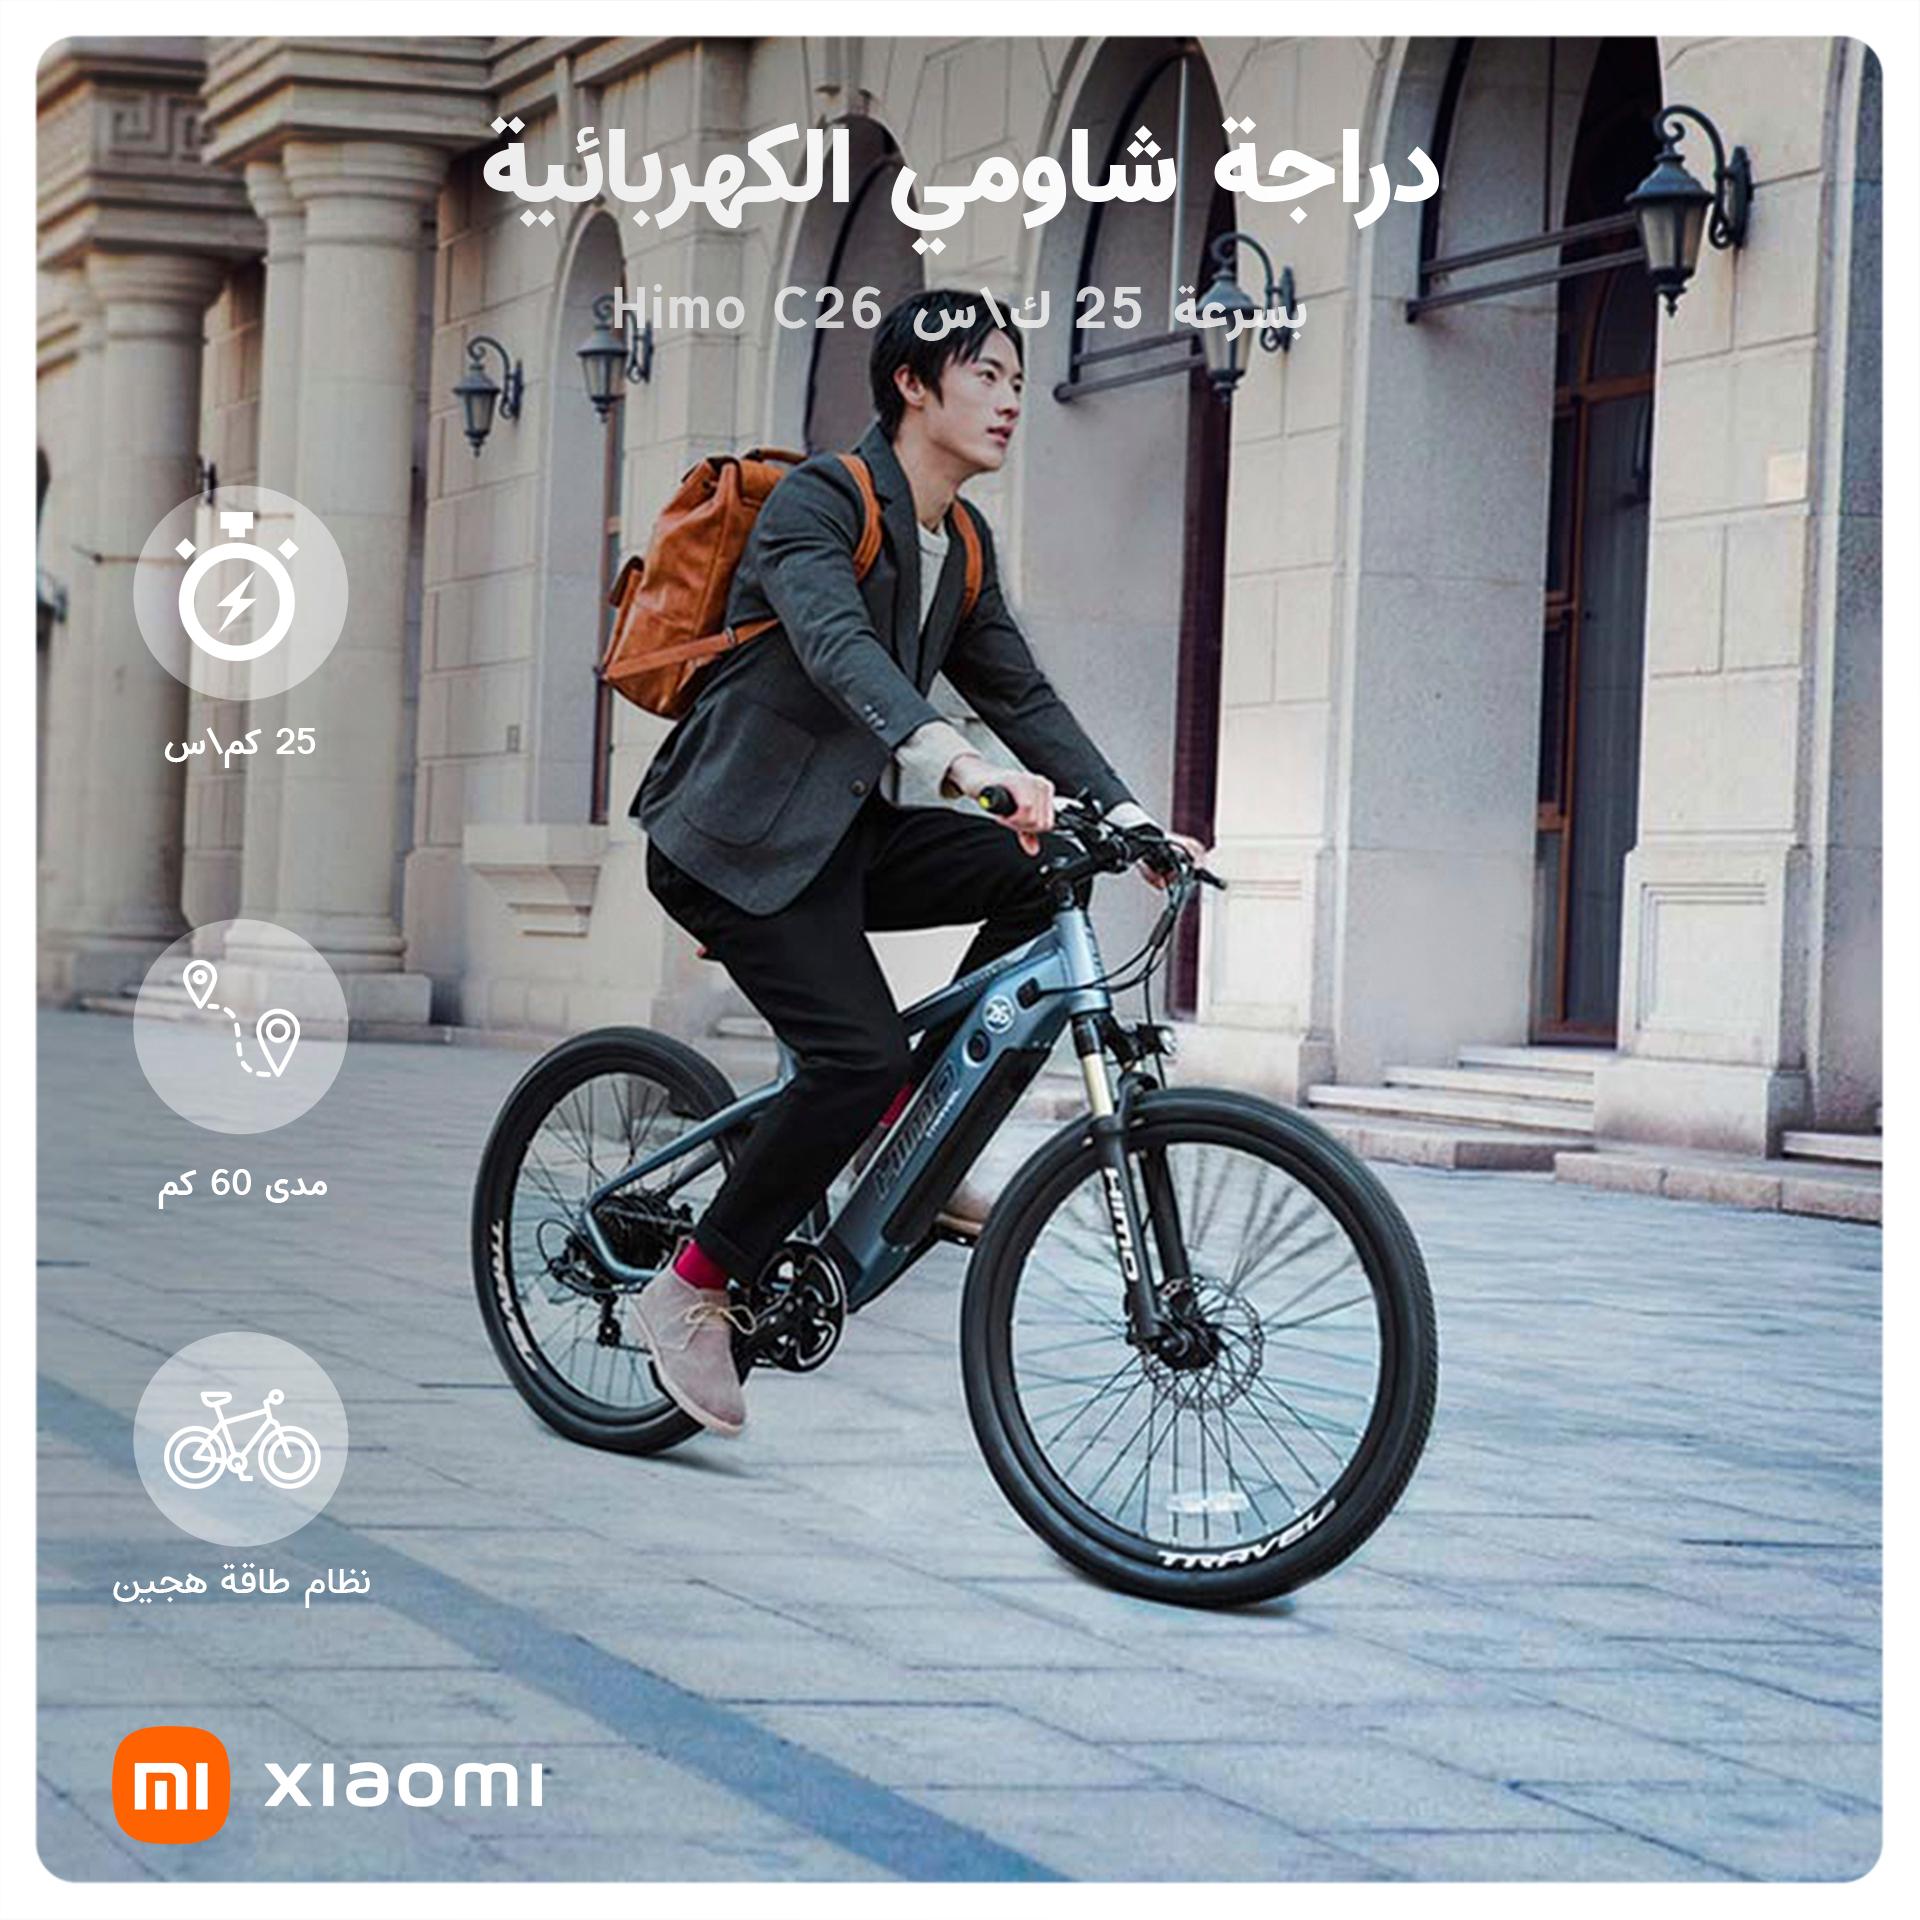 Xiaomi bike. Xiaomi Himo c26. Электровелосипед Xiaomi Himo. Электровелосипед Xiaomi c26. Xiaomi Bike Himo c26.